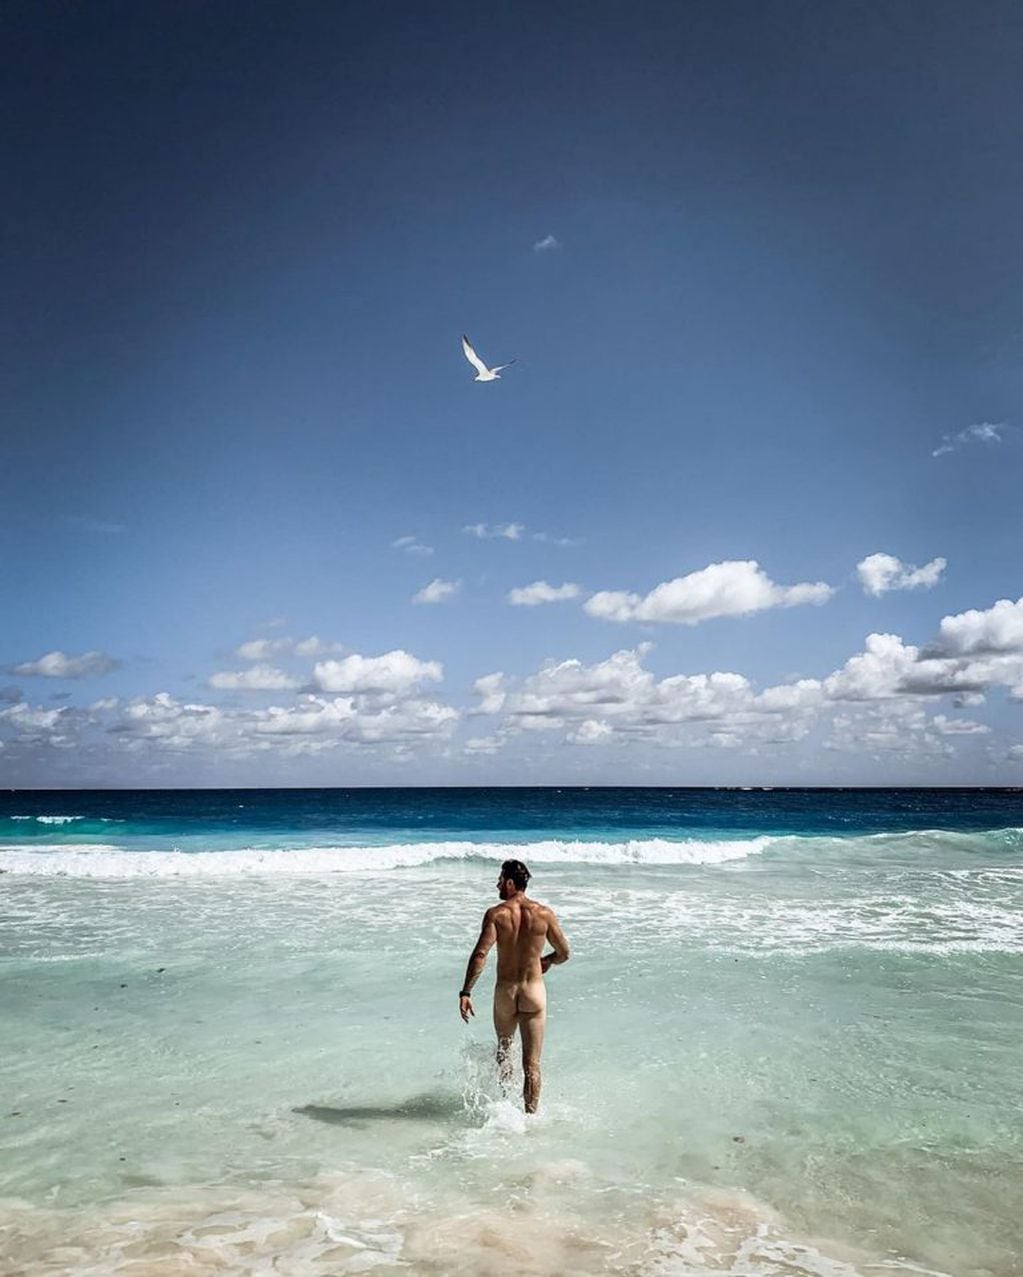 El actor y modelo argentino Sebastian Rulli dejó atónitos a sus seguidores tras publicar una foto desnudo entrando al mar (Foto: Instagram/ @sebastianrulli)